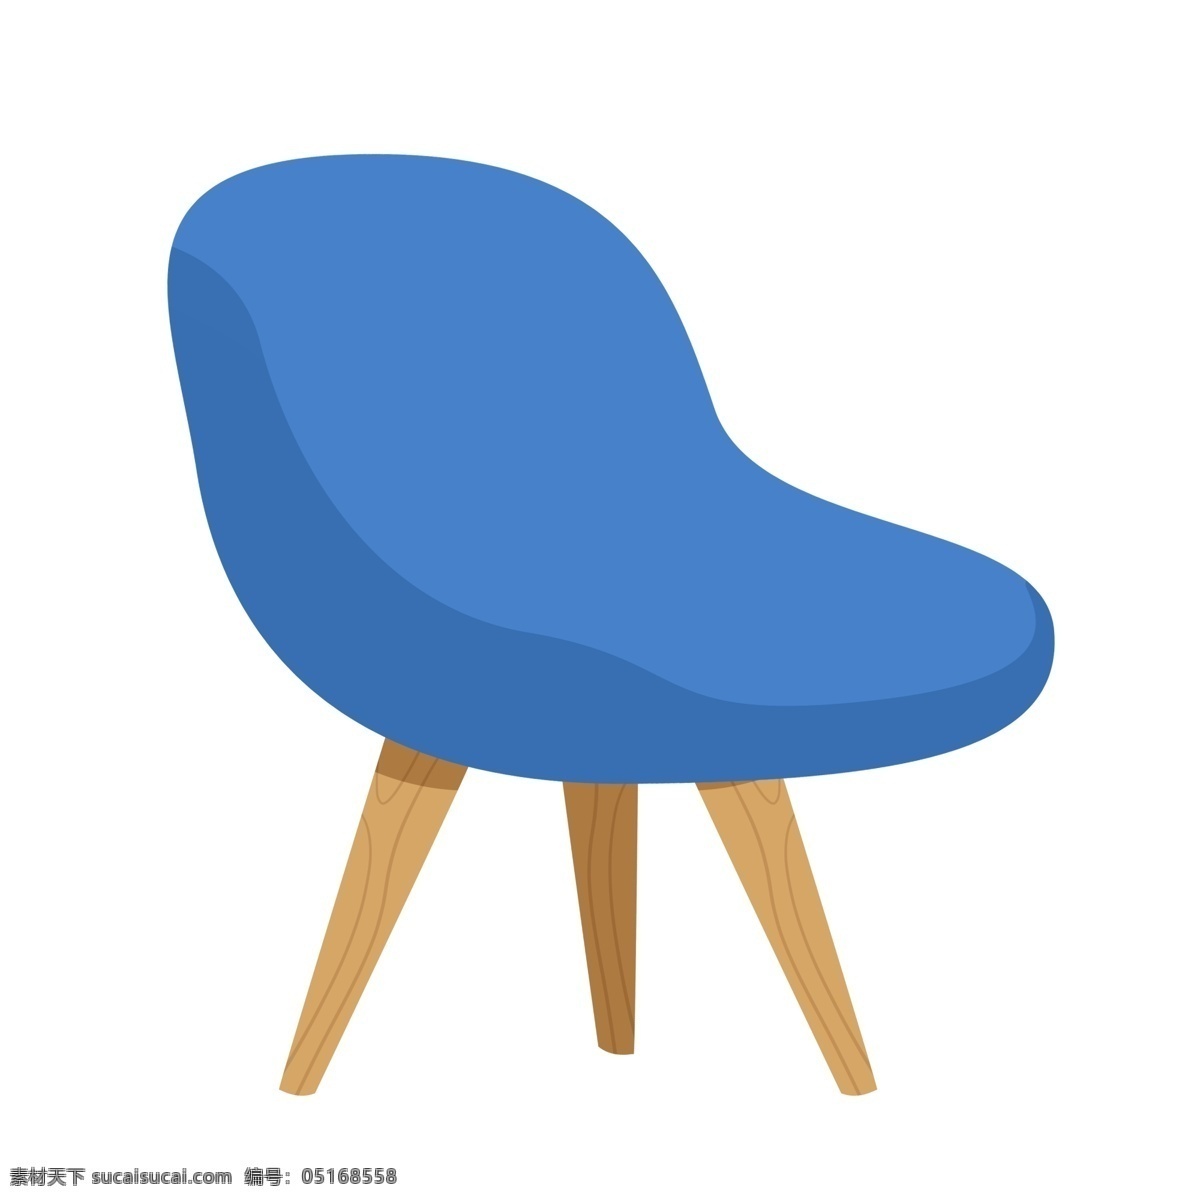 蓝色沙发椅 舒适座椅 实木家具 椅子